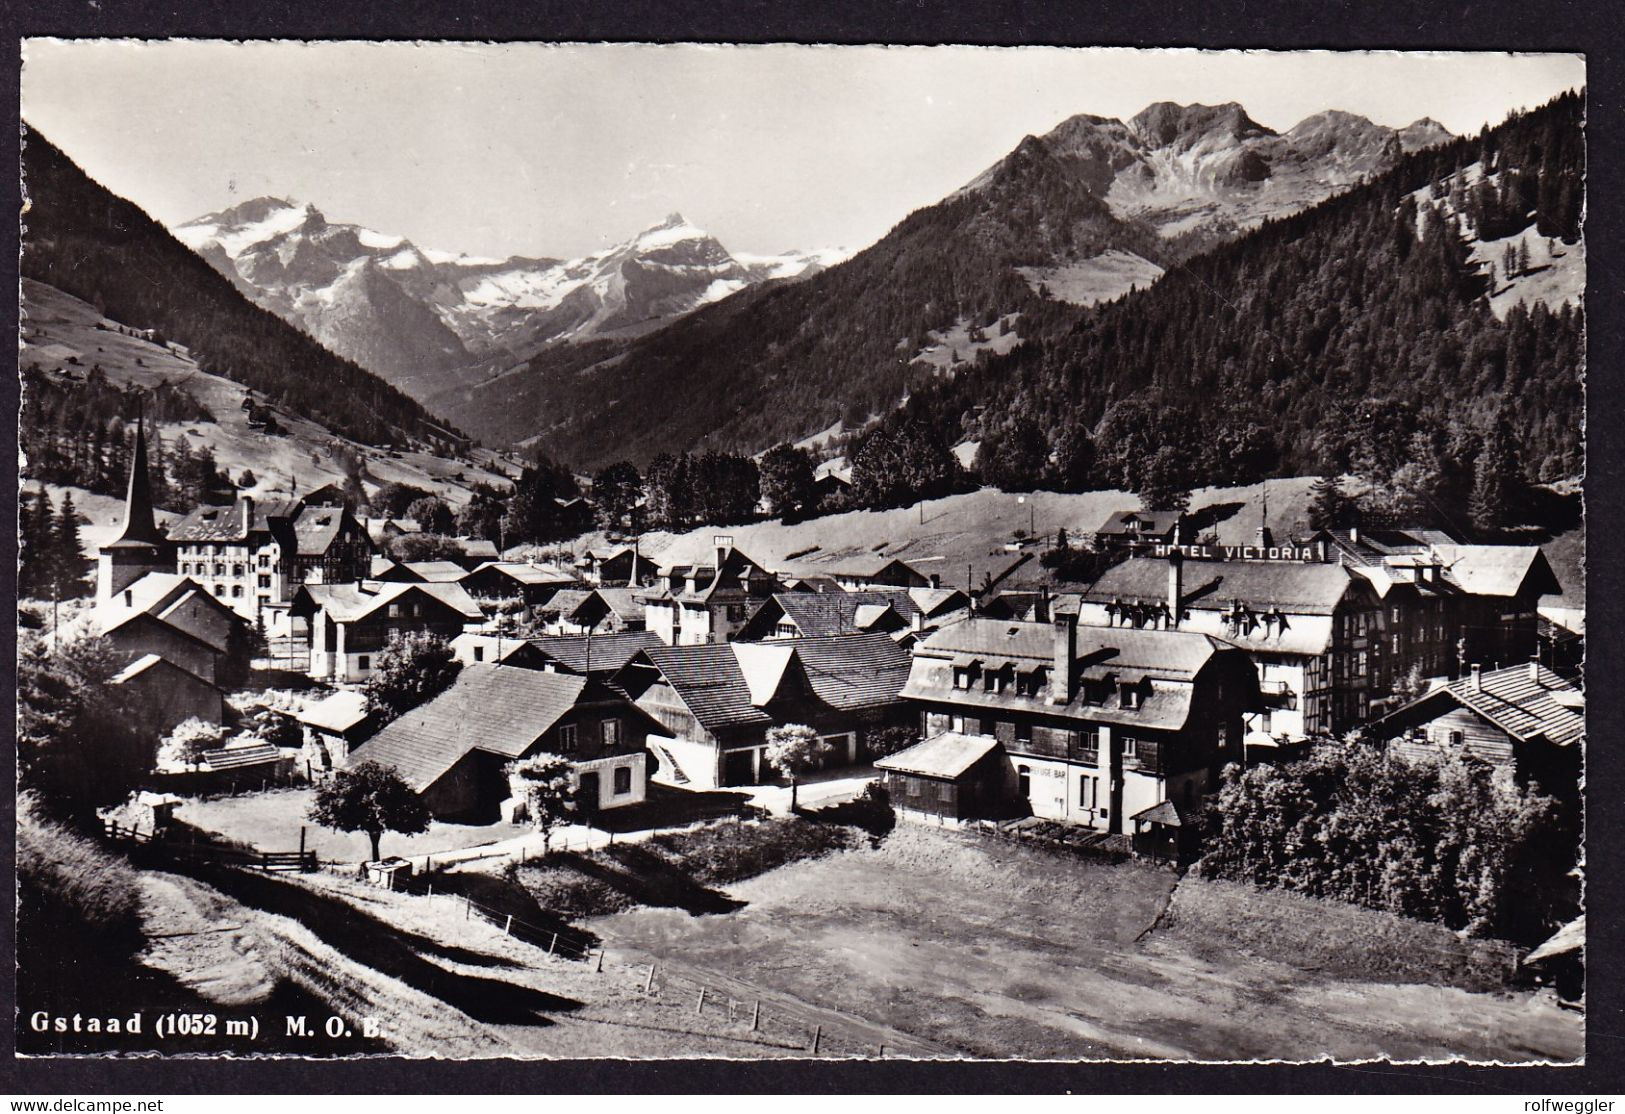 1951 Gelaufene AK Aus Gstaad Mit Bahnstempel Mit 8 Eckig GSTAAD M.O.B. - Railway